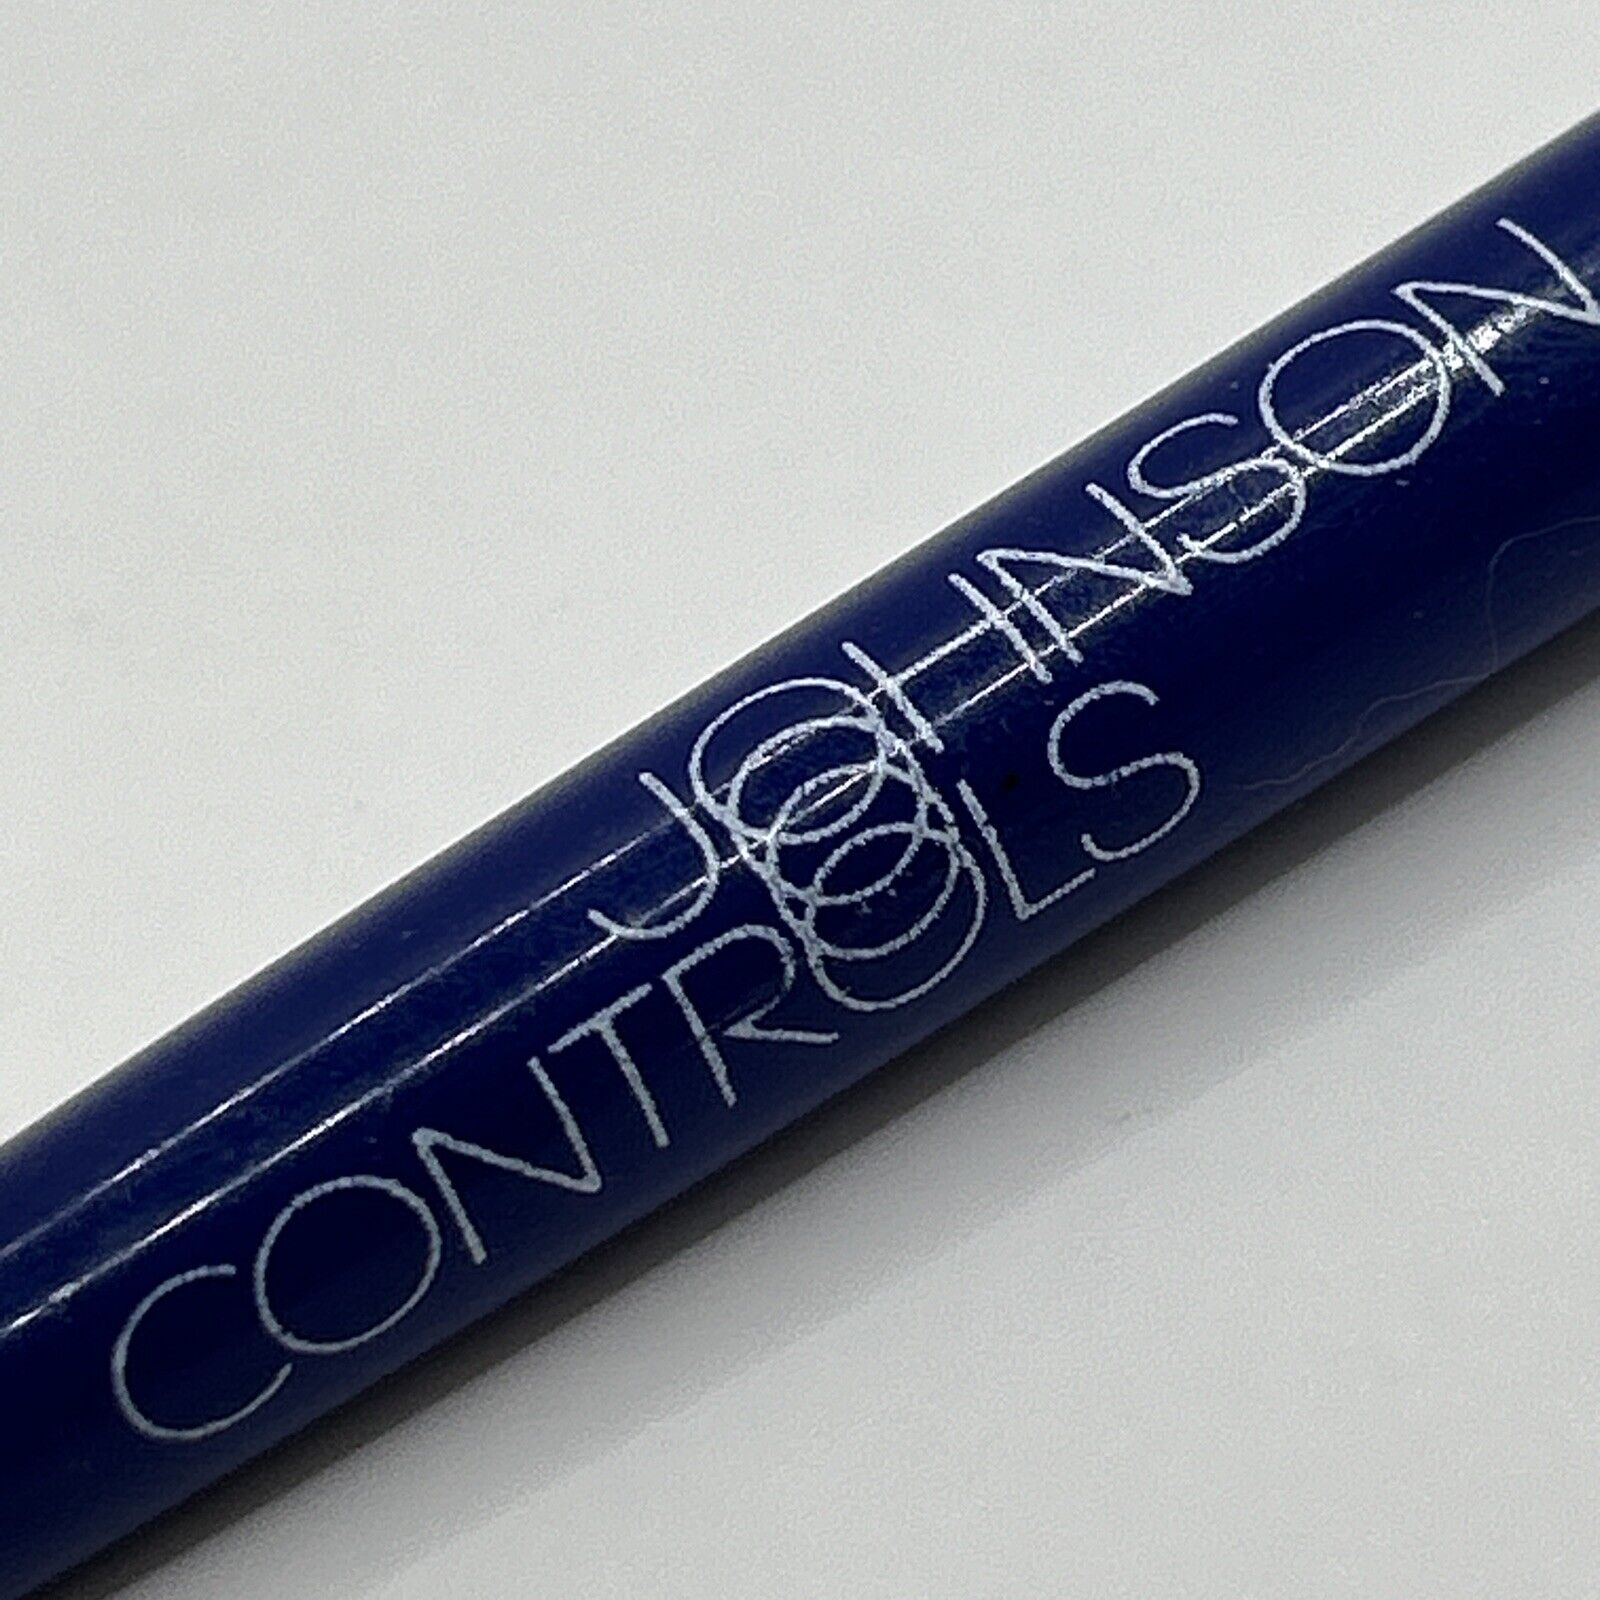 VTG Ballpoint Pen Johnson Controls